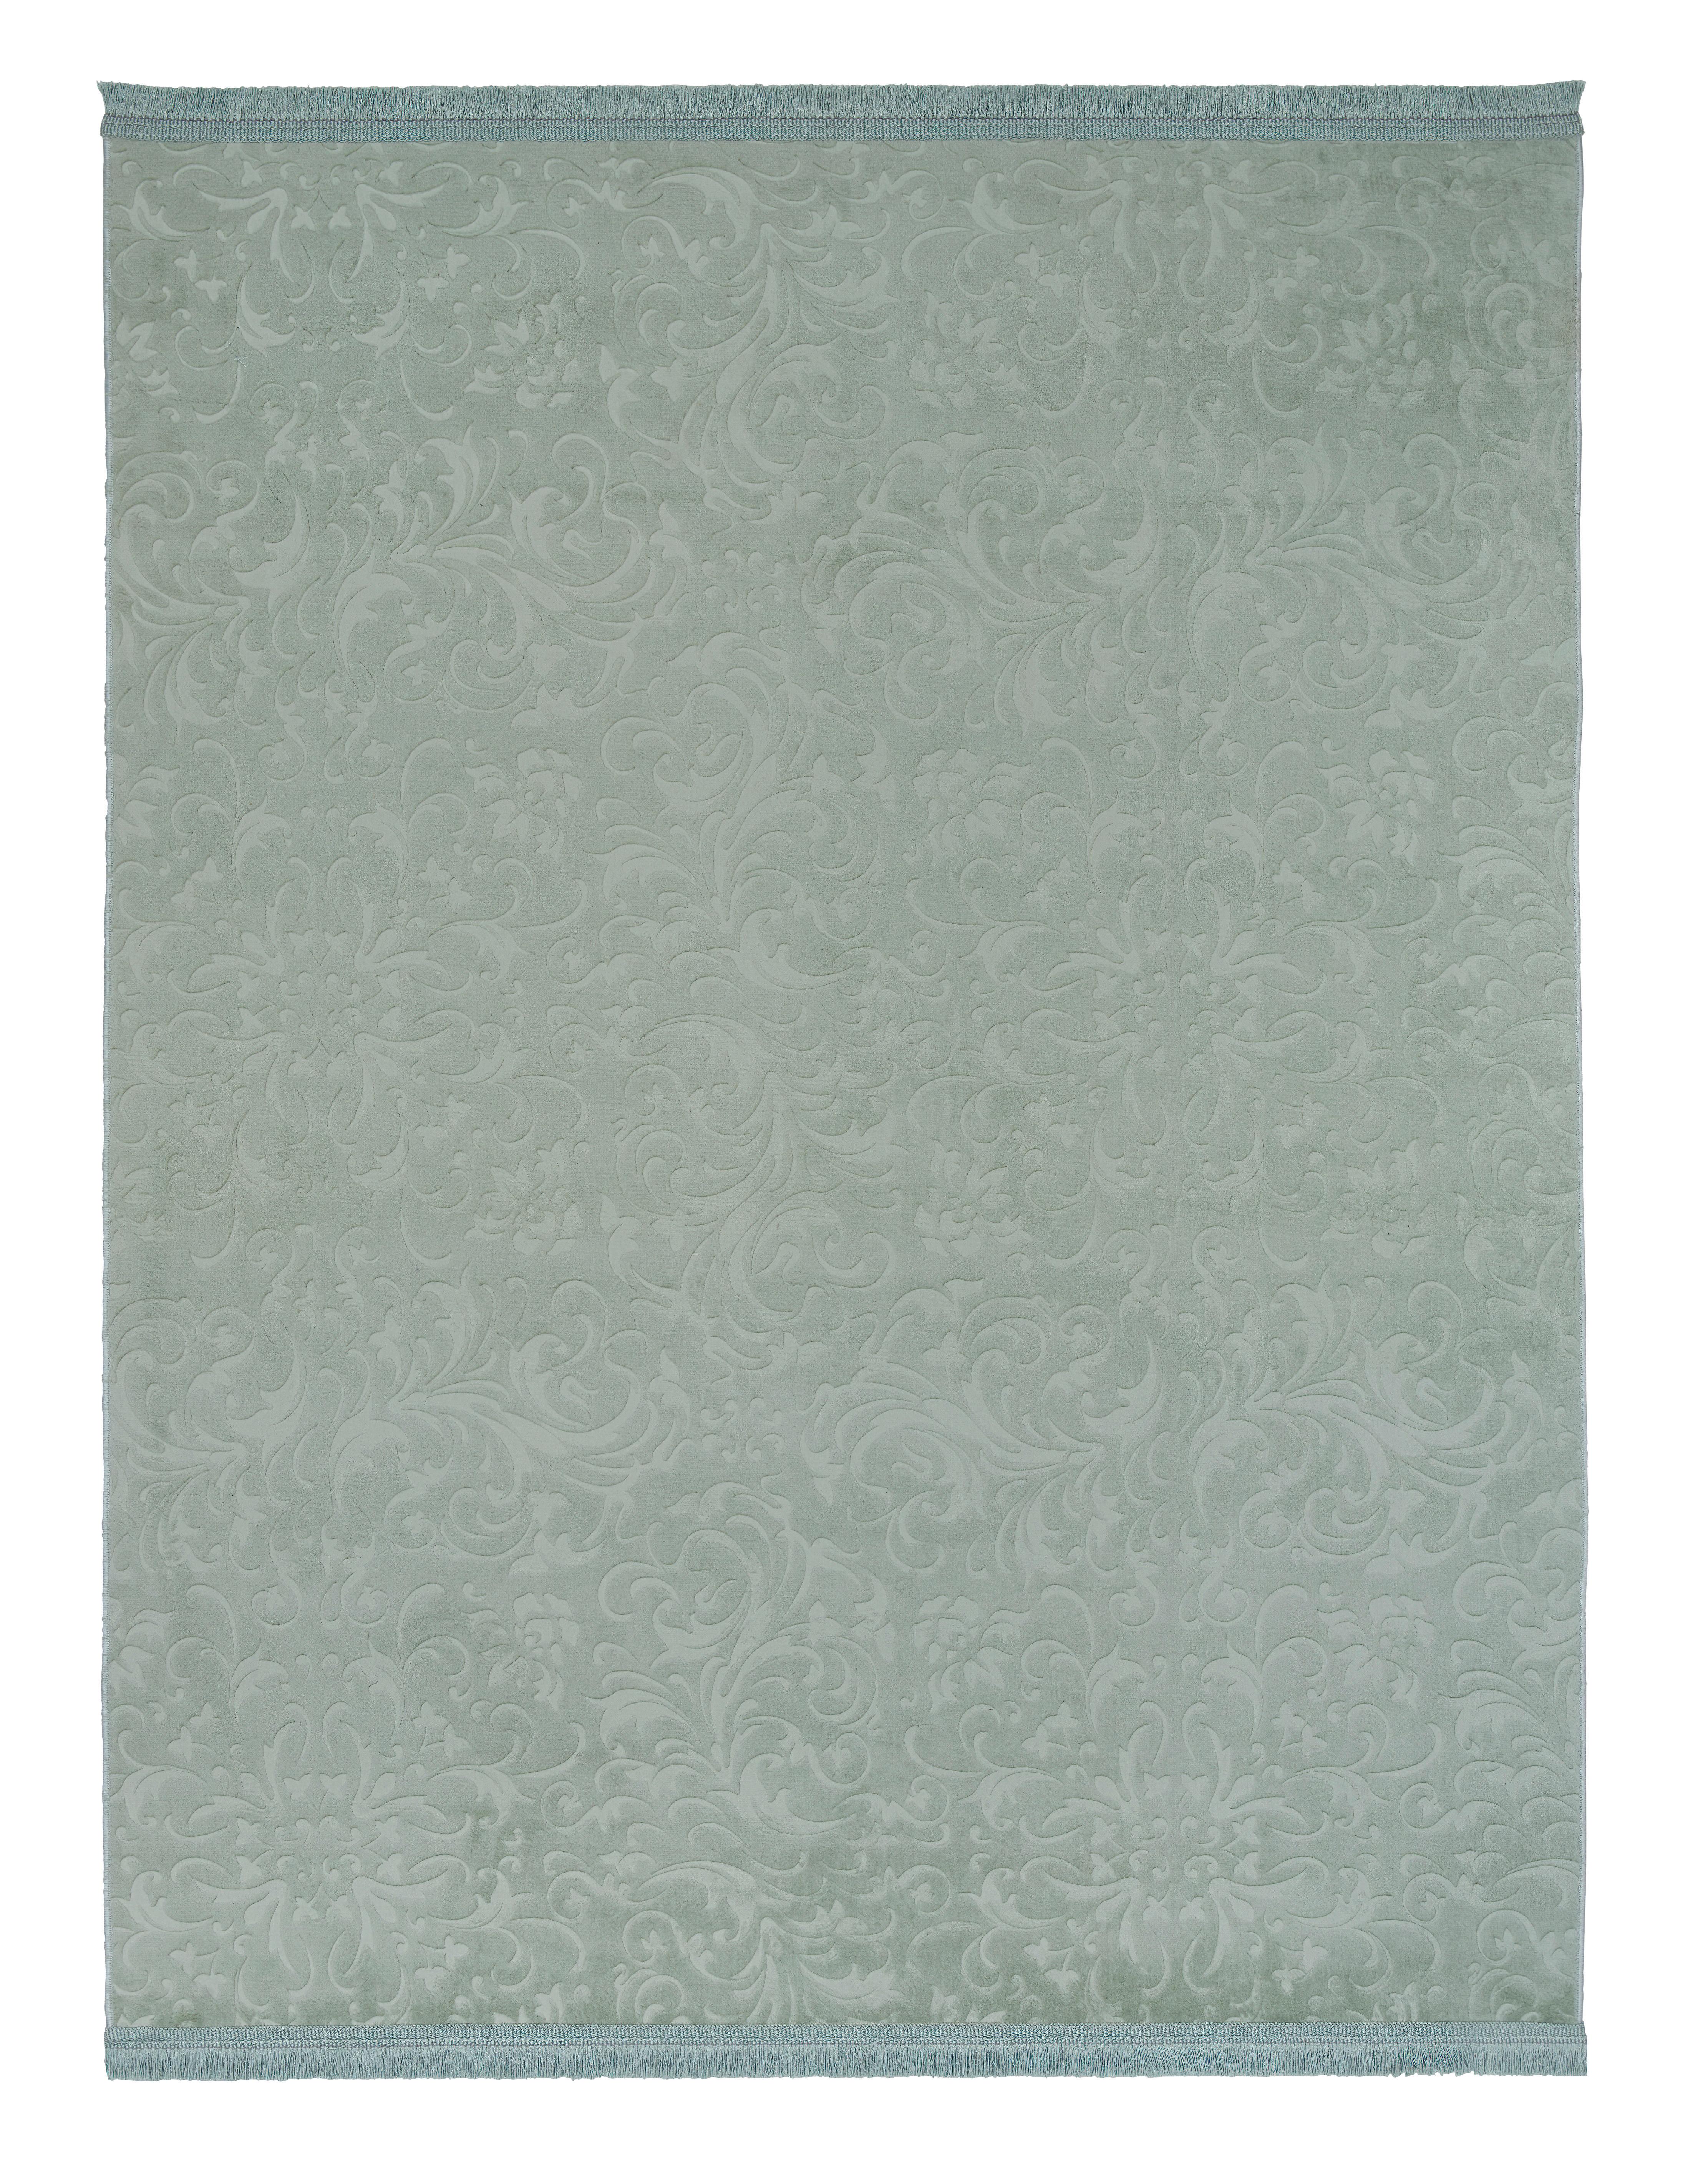 Tkaný Koberec Daphne 3, 150/220cm, Zelená - zelená, Moderní, textil (150/220cm) - Modern Living